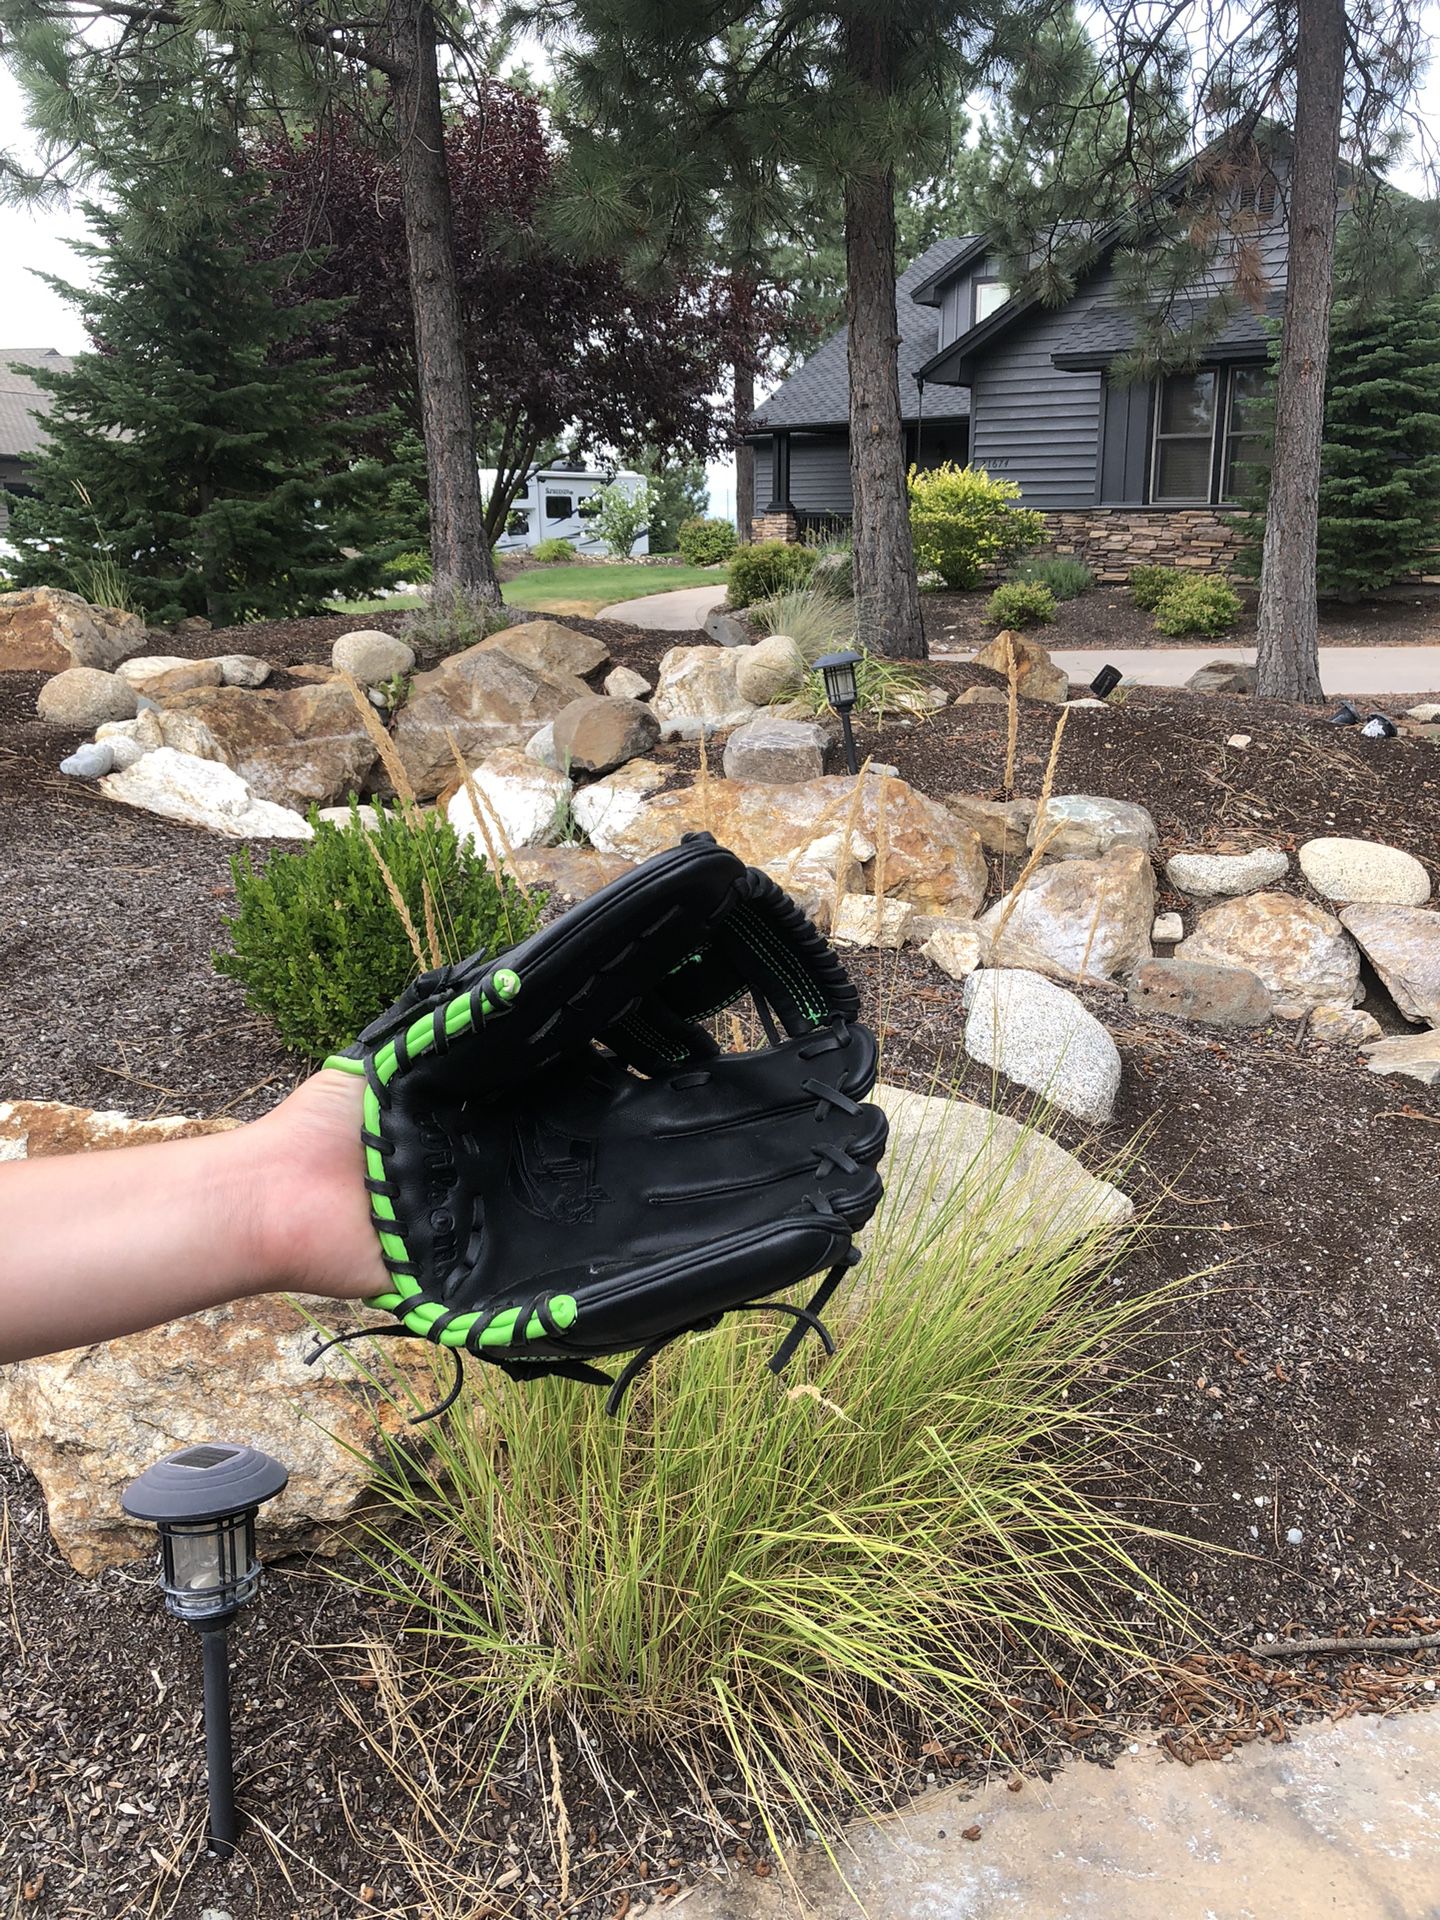 Wilson 6-4-3 Baseball Glove